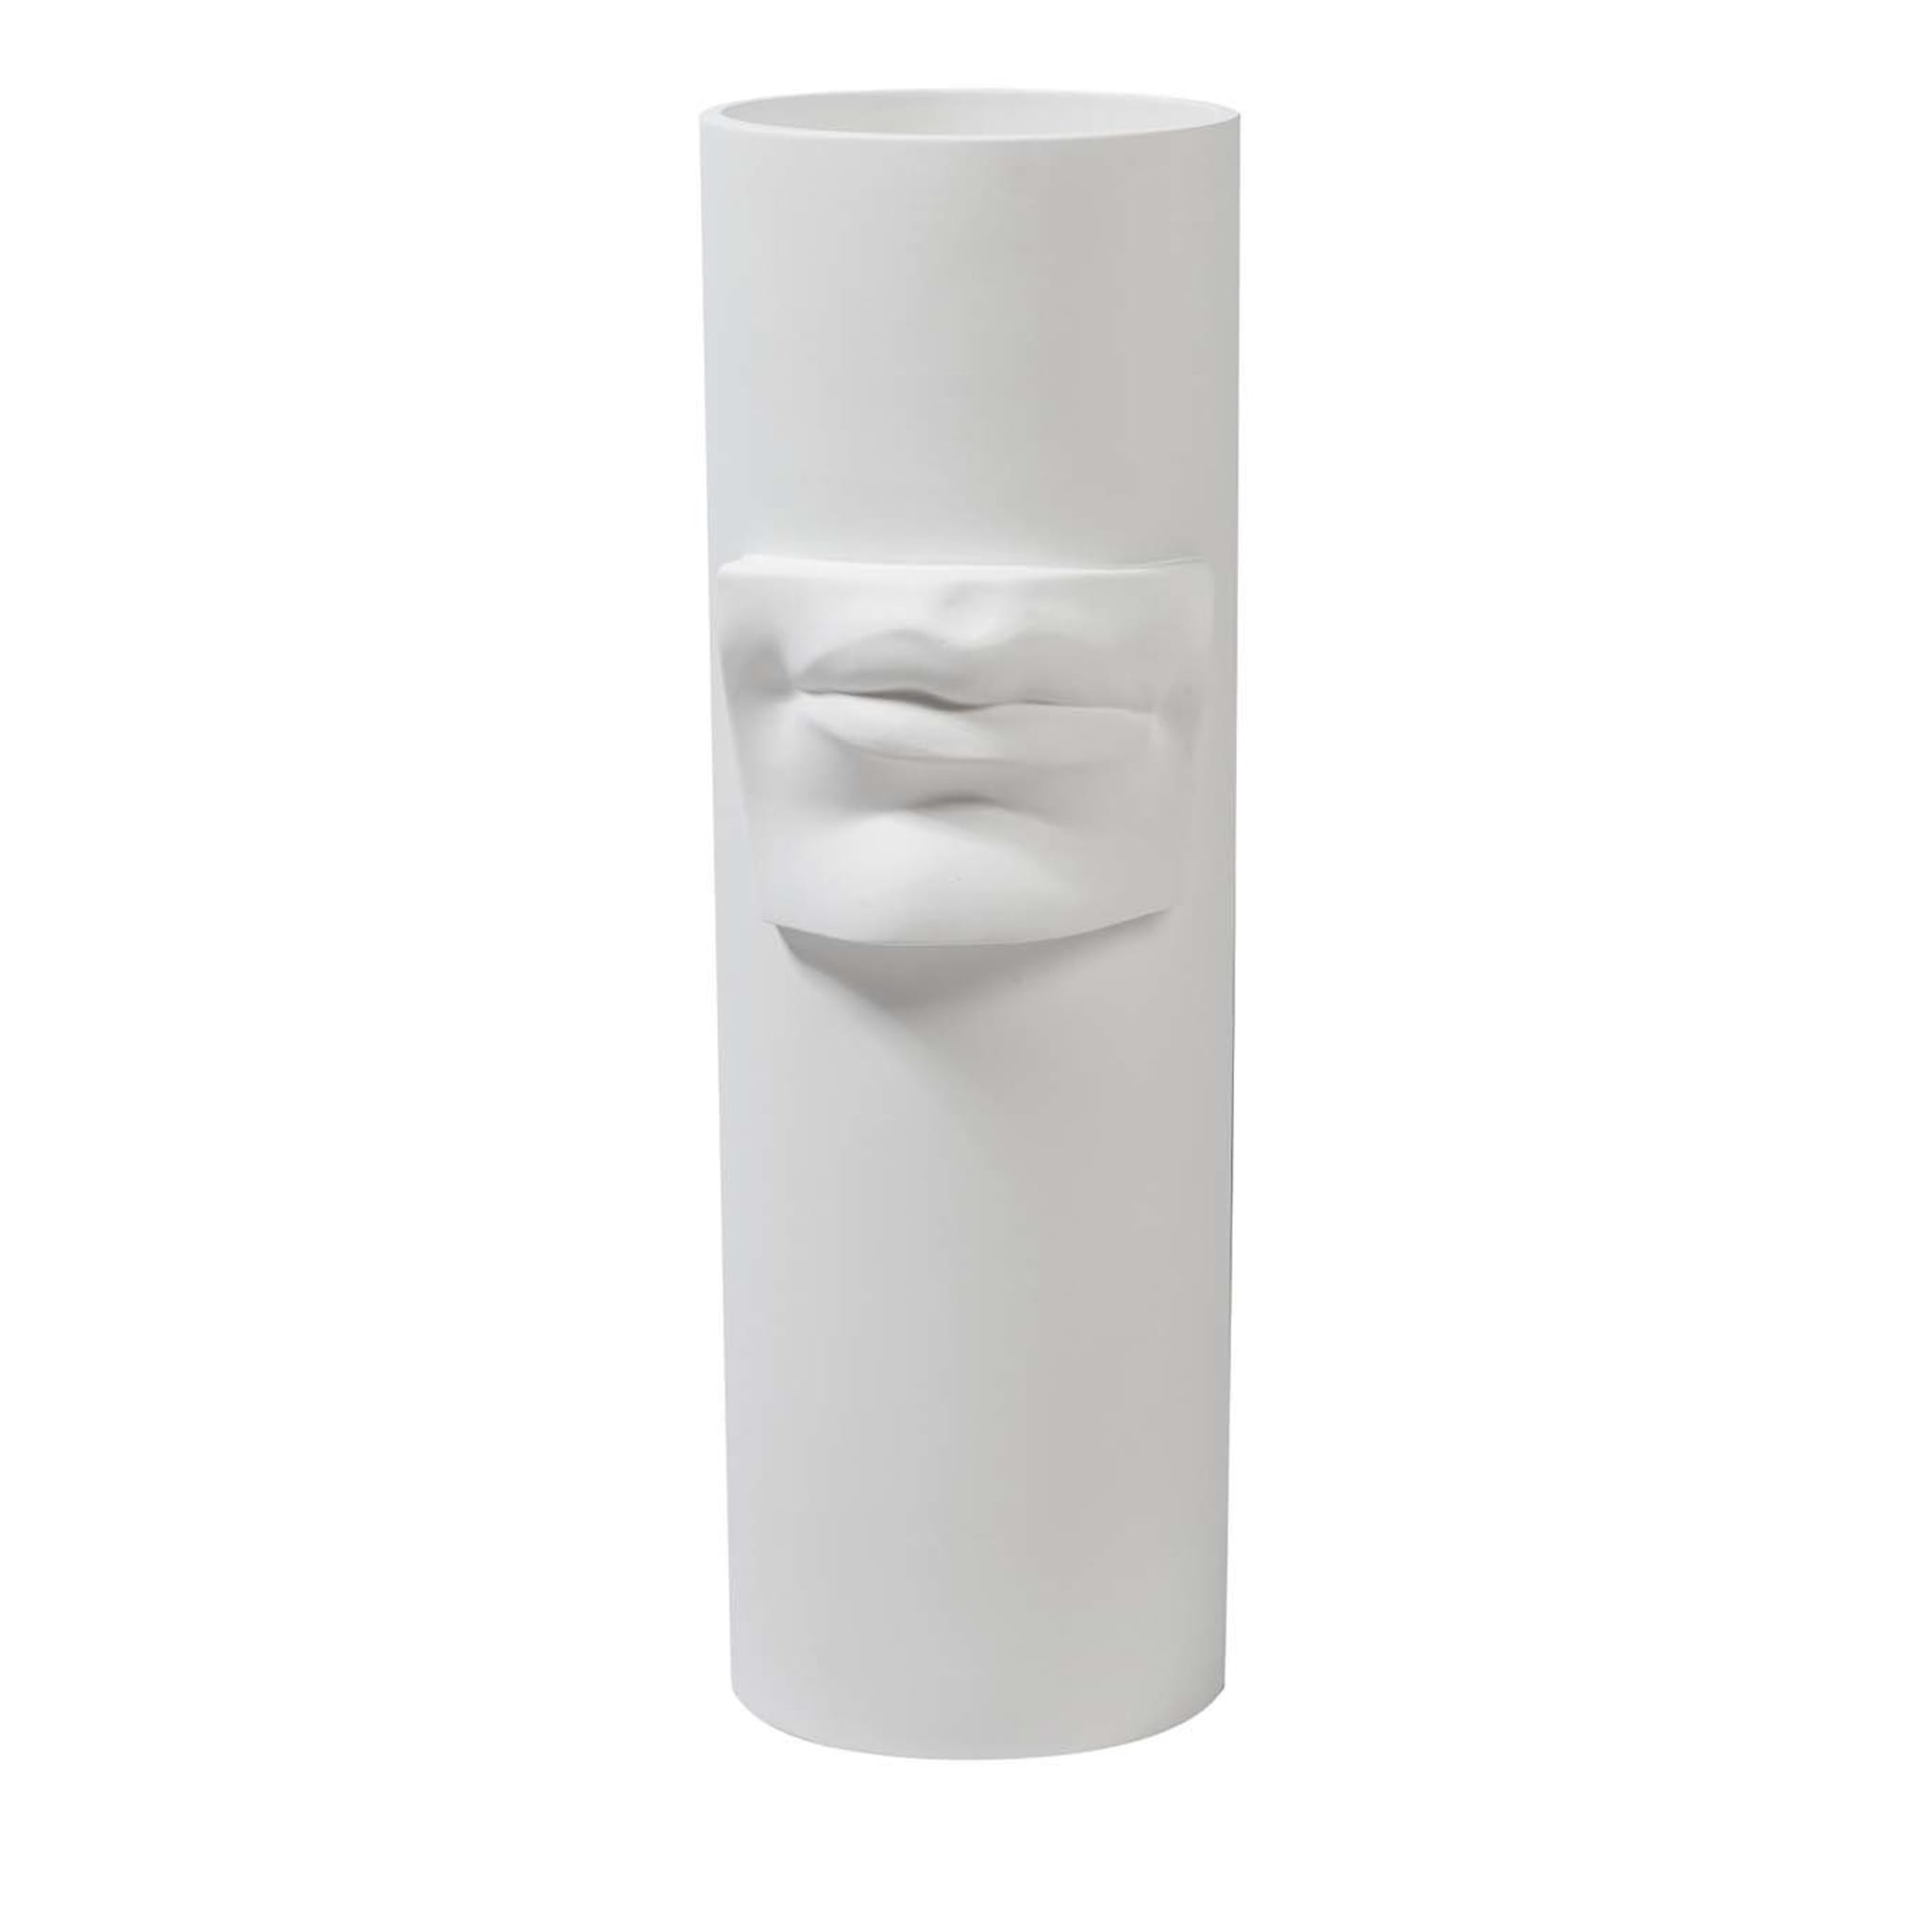 David's Lips Weiße Vase - Hauptansicht